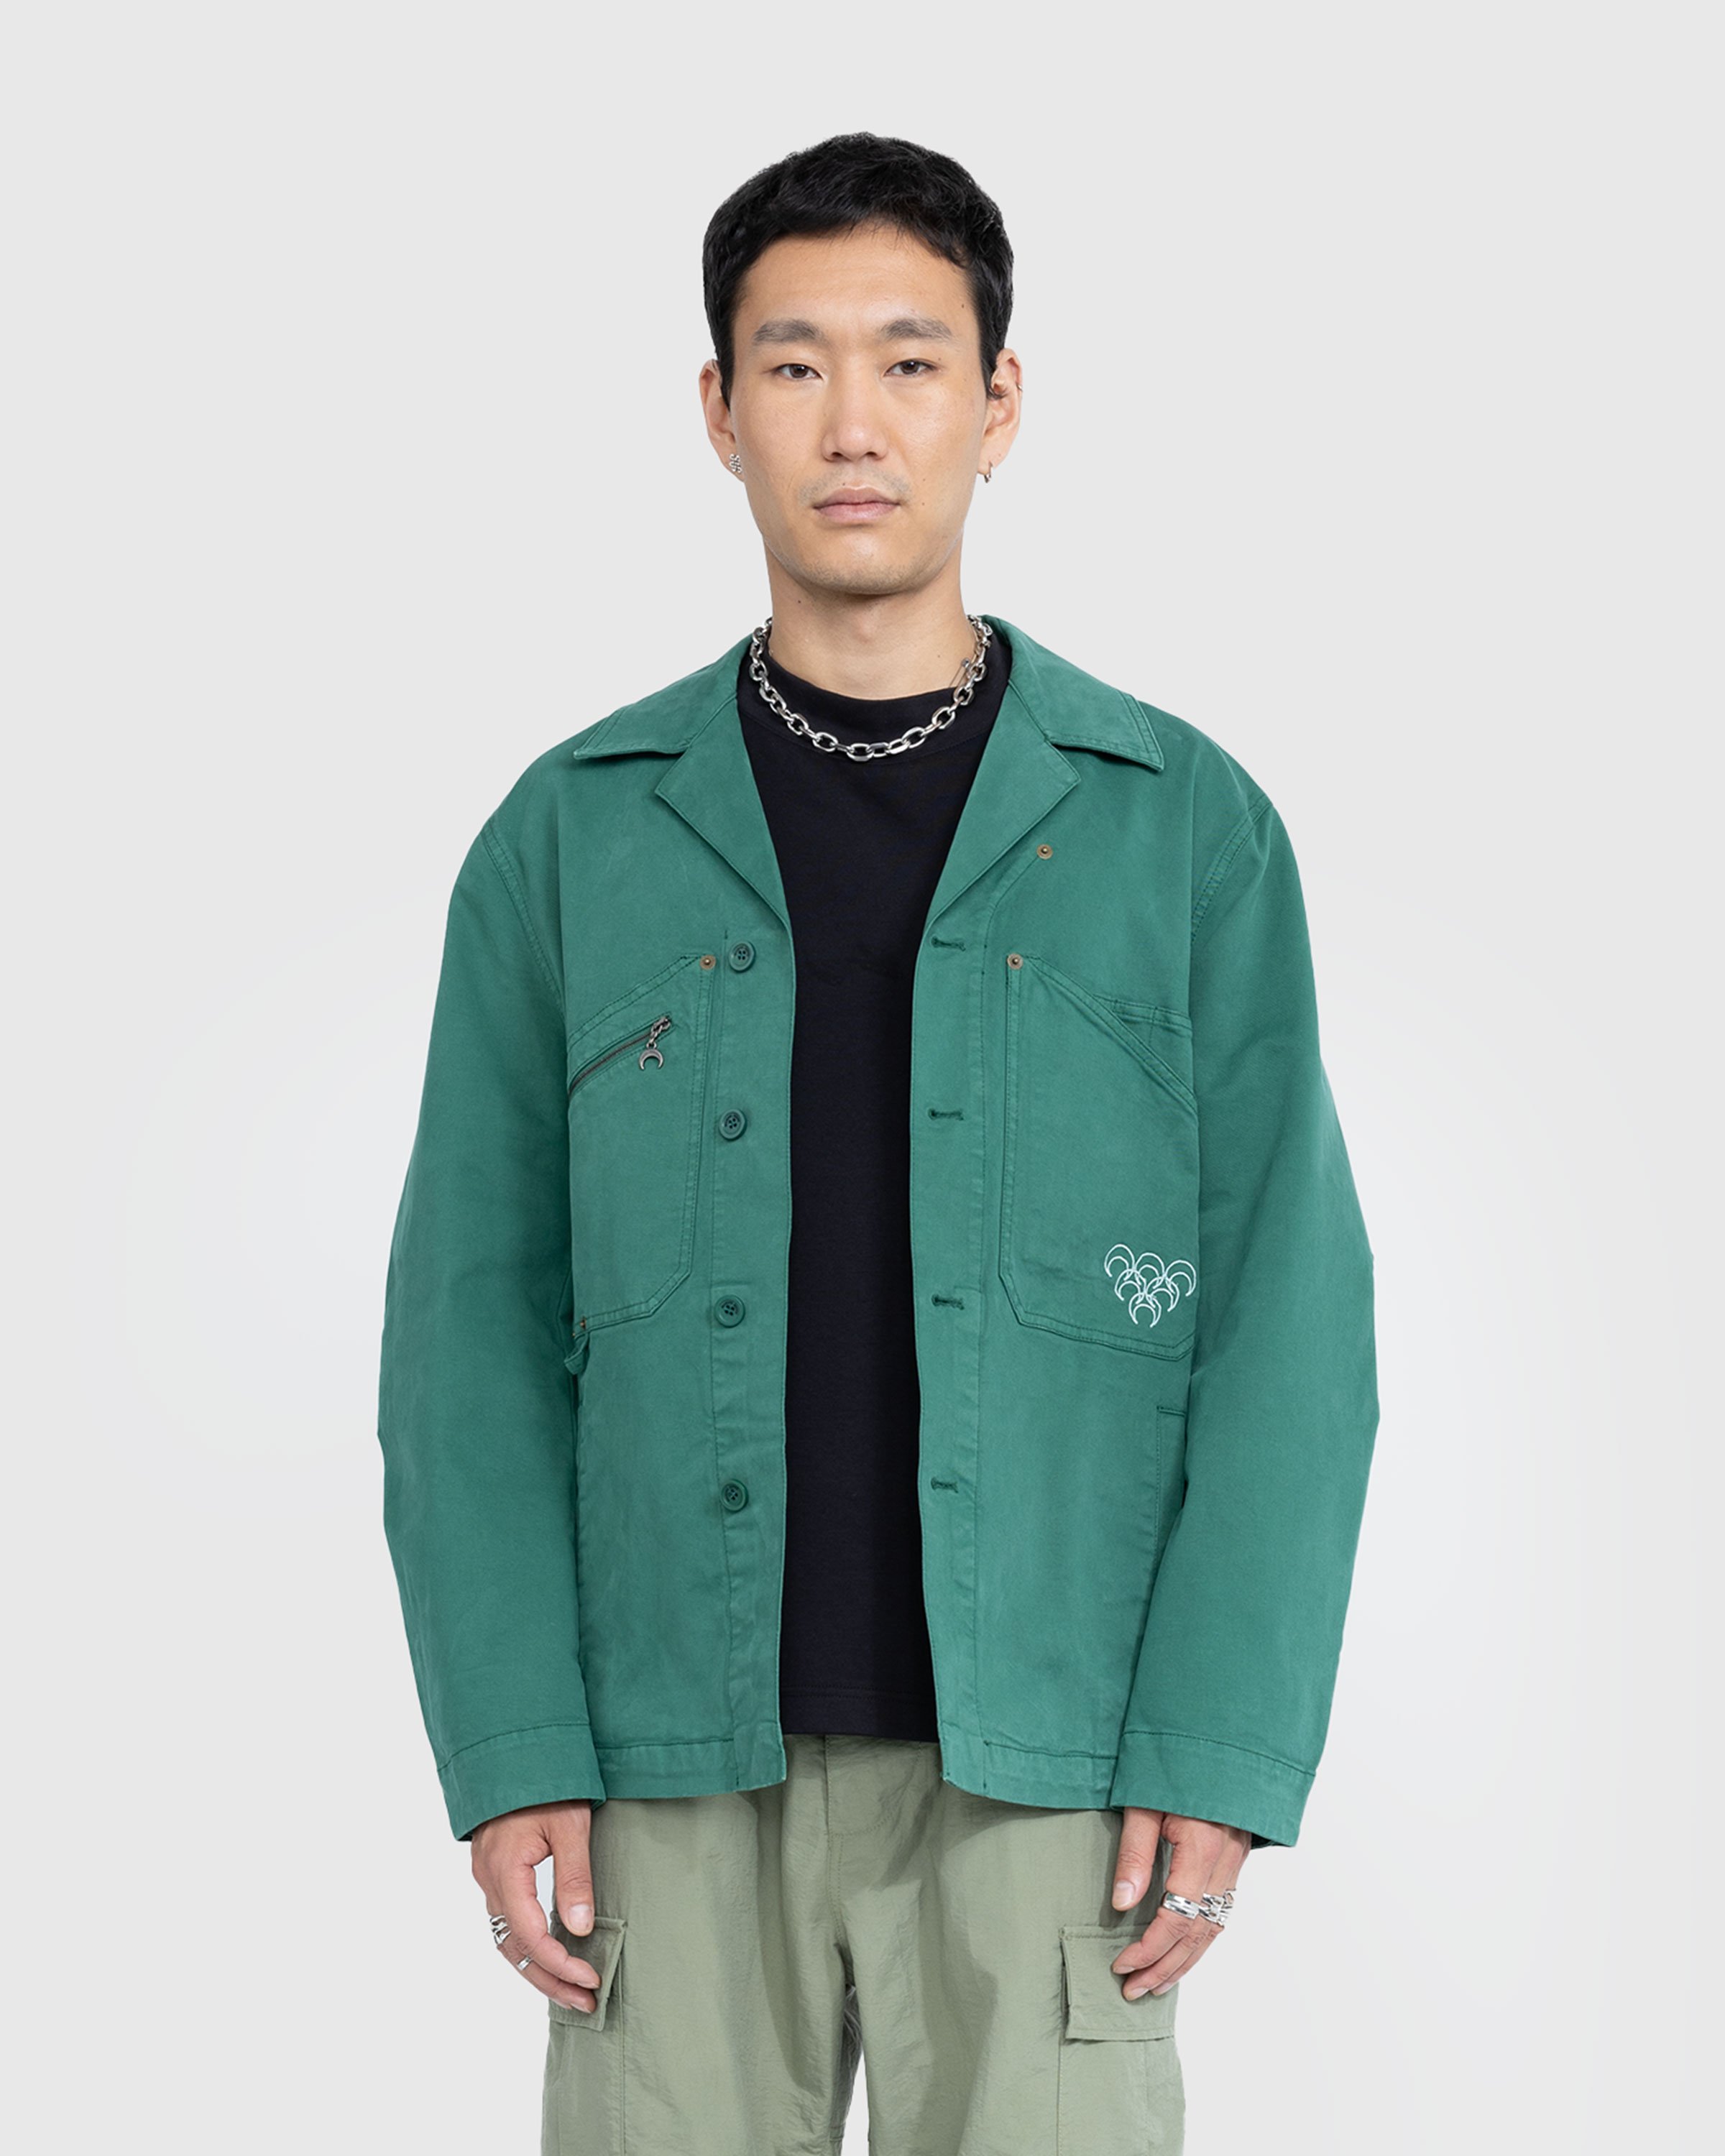 Marine Serre - Workwear Jacket Evergreen - Clothing - Green - Image 2